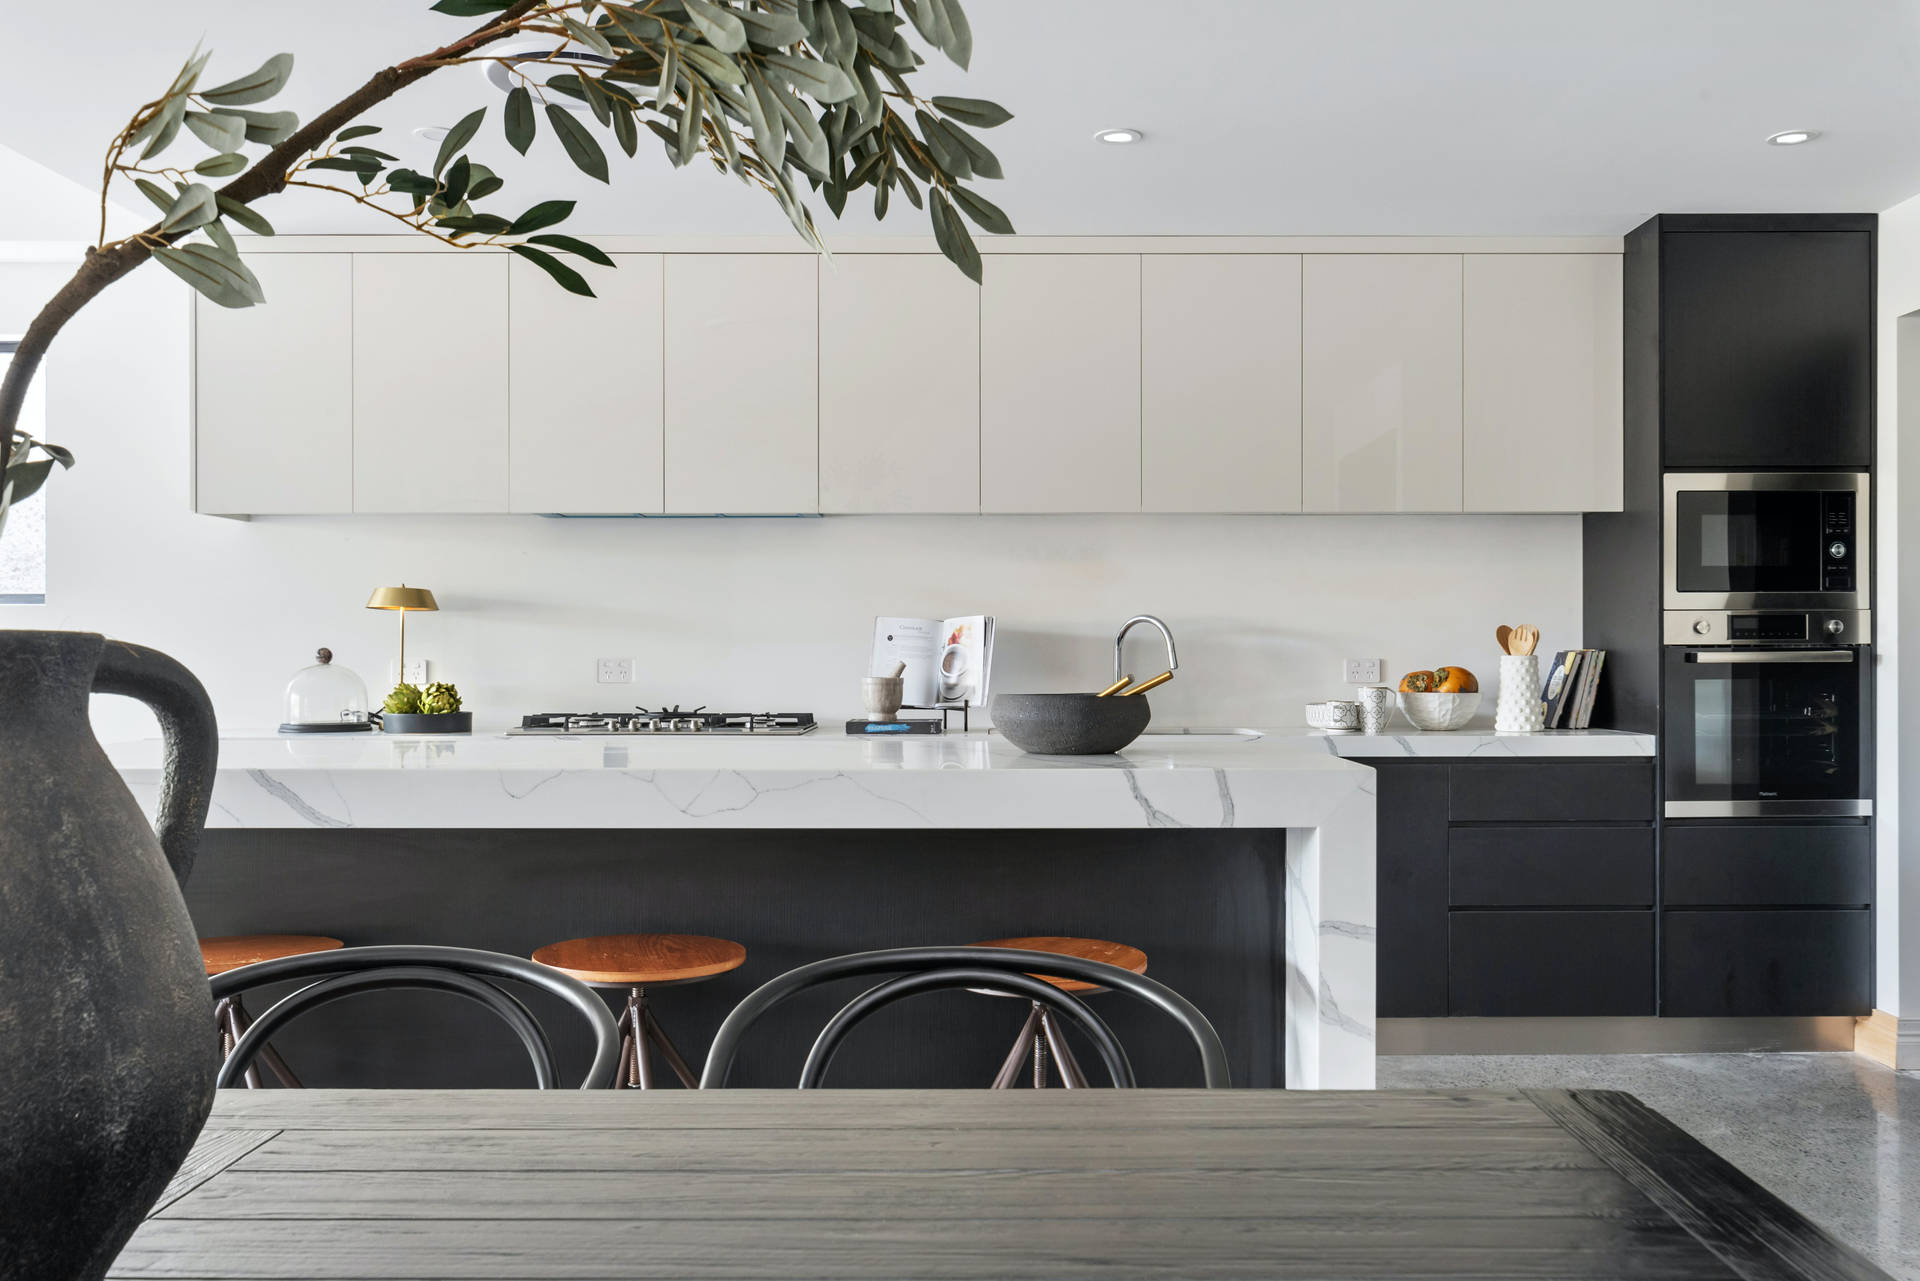 Modern Galley Kitchen With Sleek Design Background